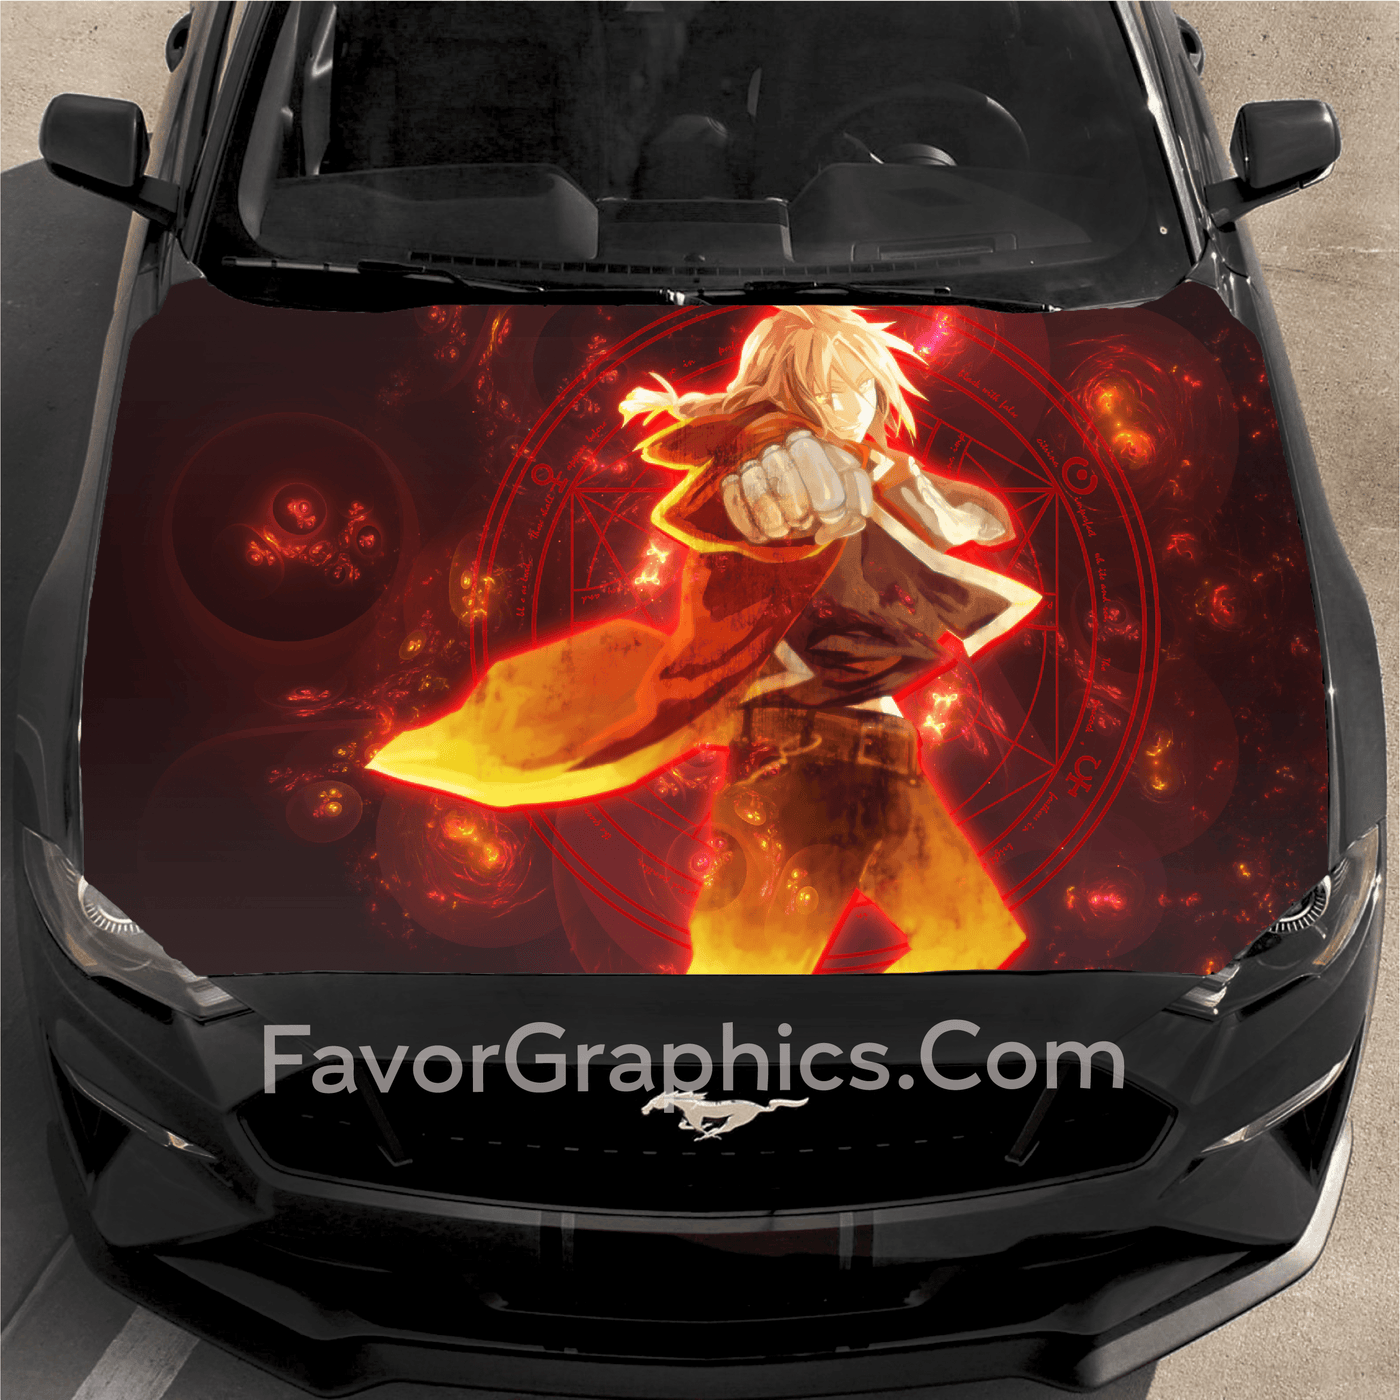 Elric Fullmetal Alchemist Car Decal Vinyl Hood Wrap High Quality Graphic